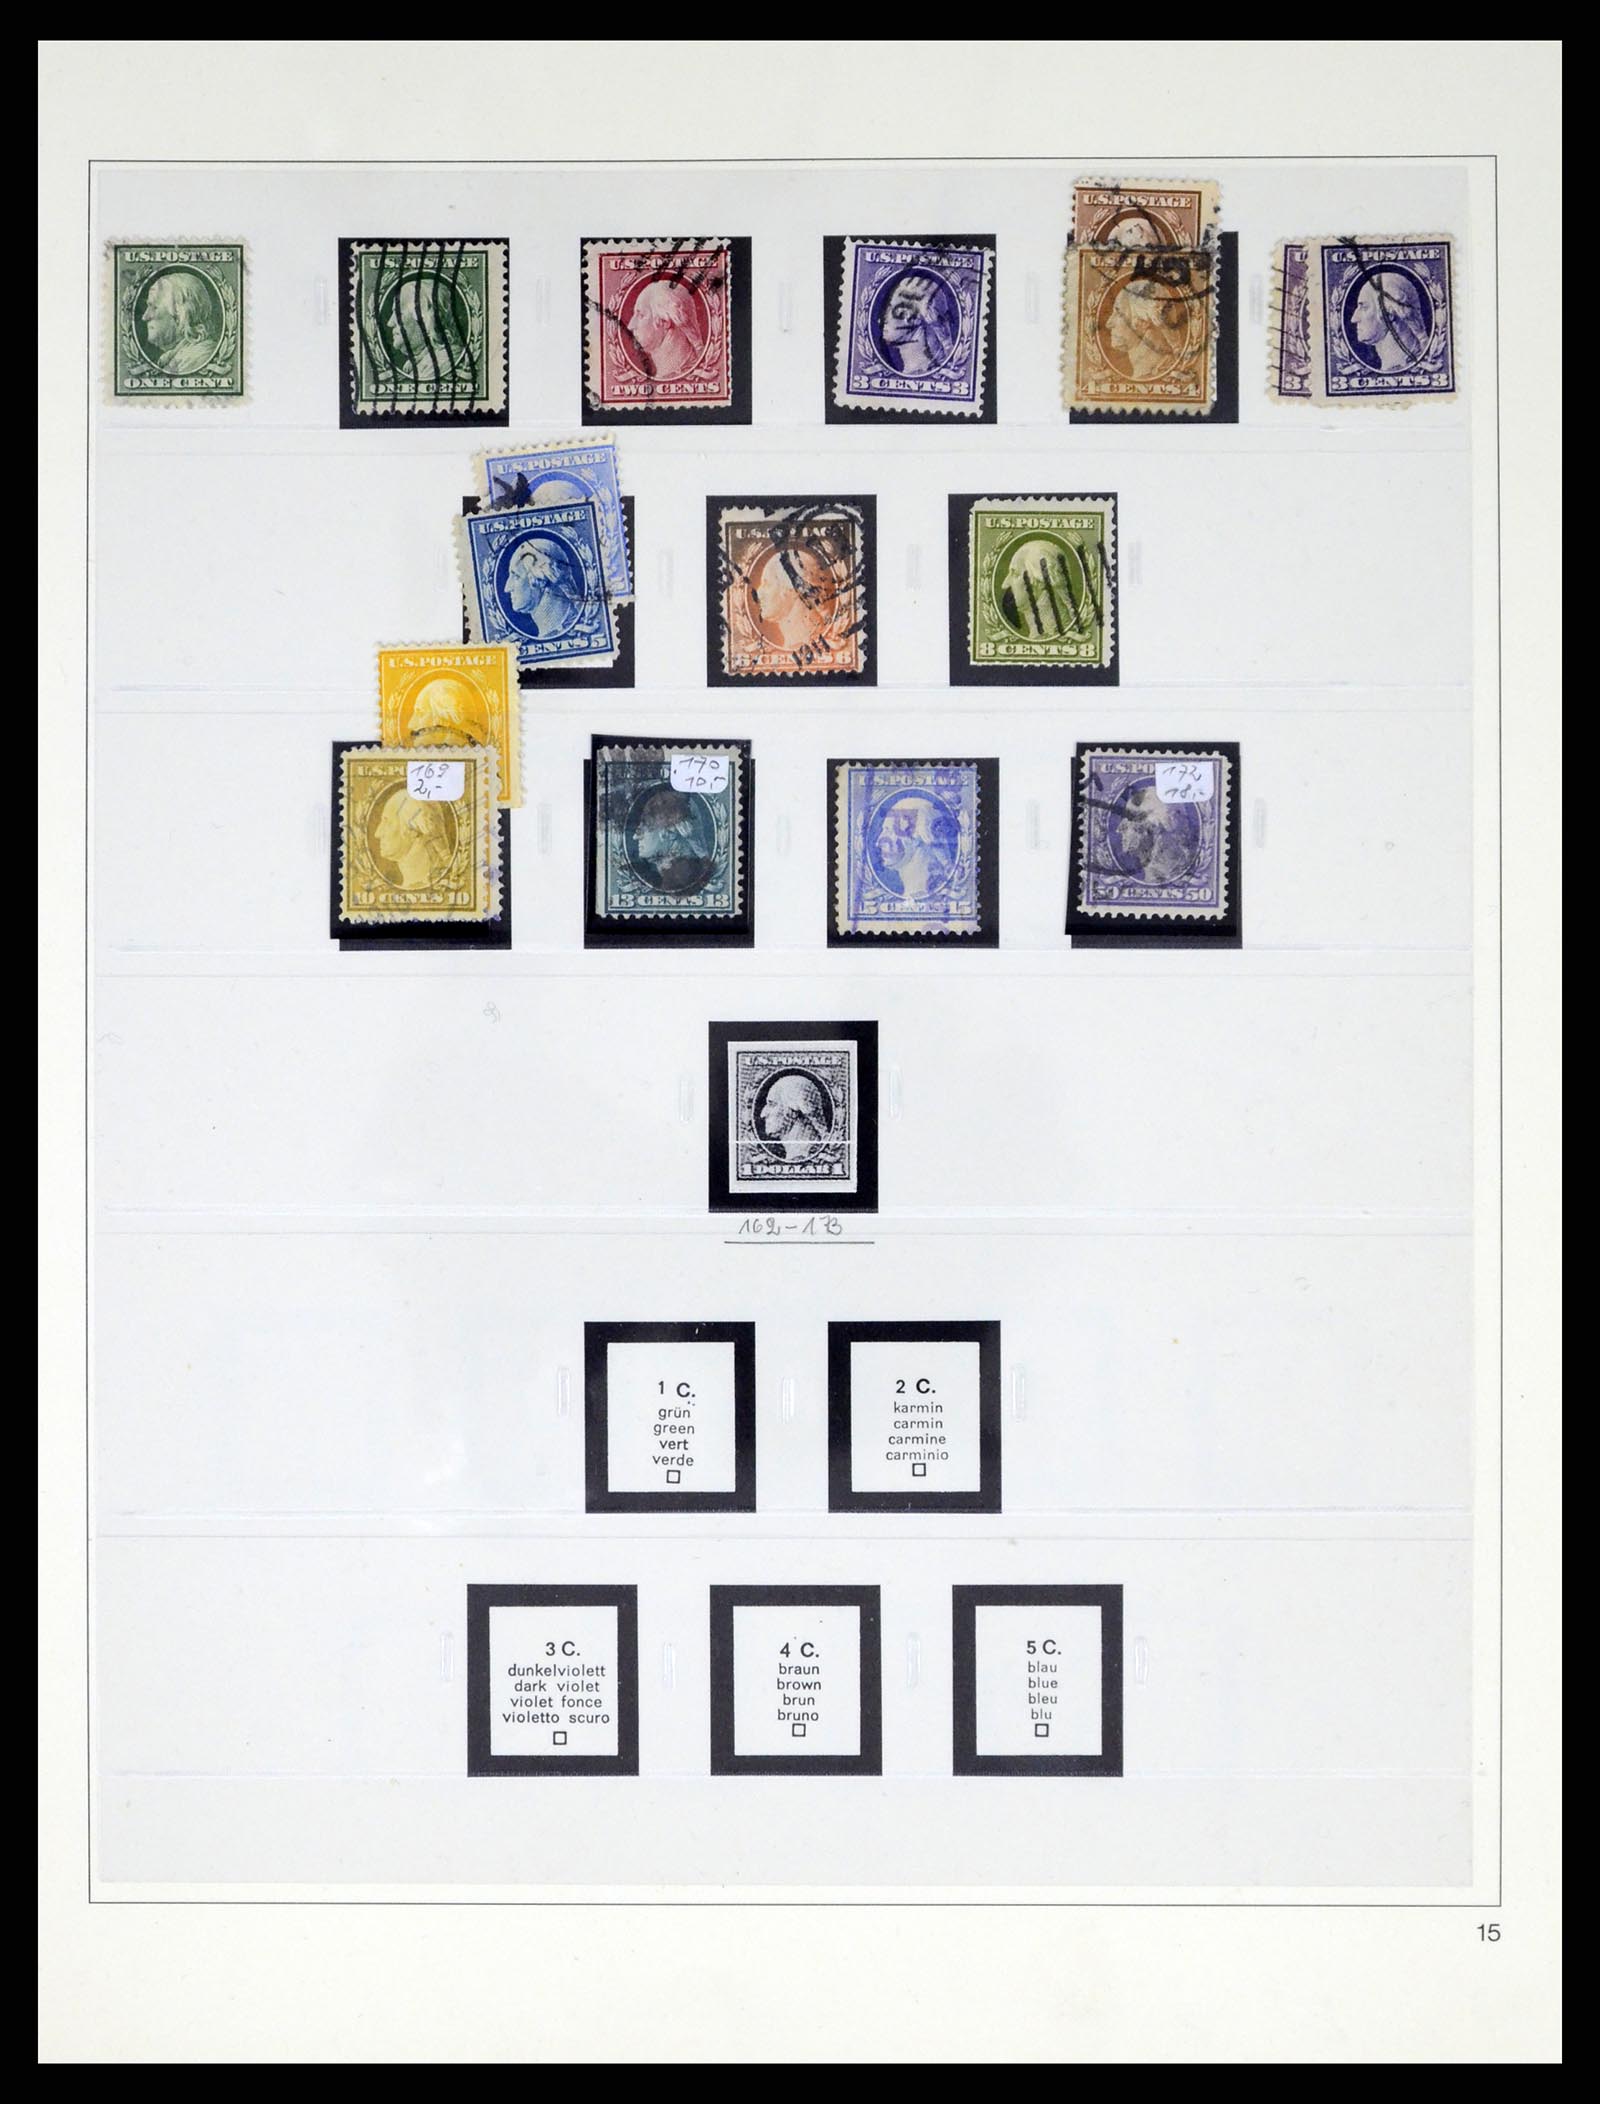 37551 020 - Stamp collection 37551 USA 1851-2001.